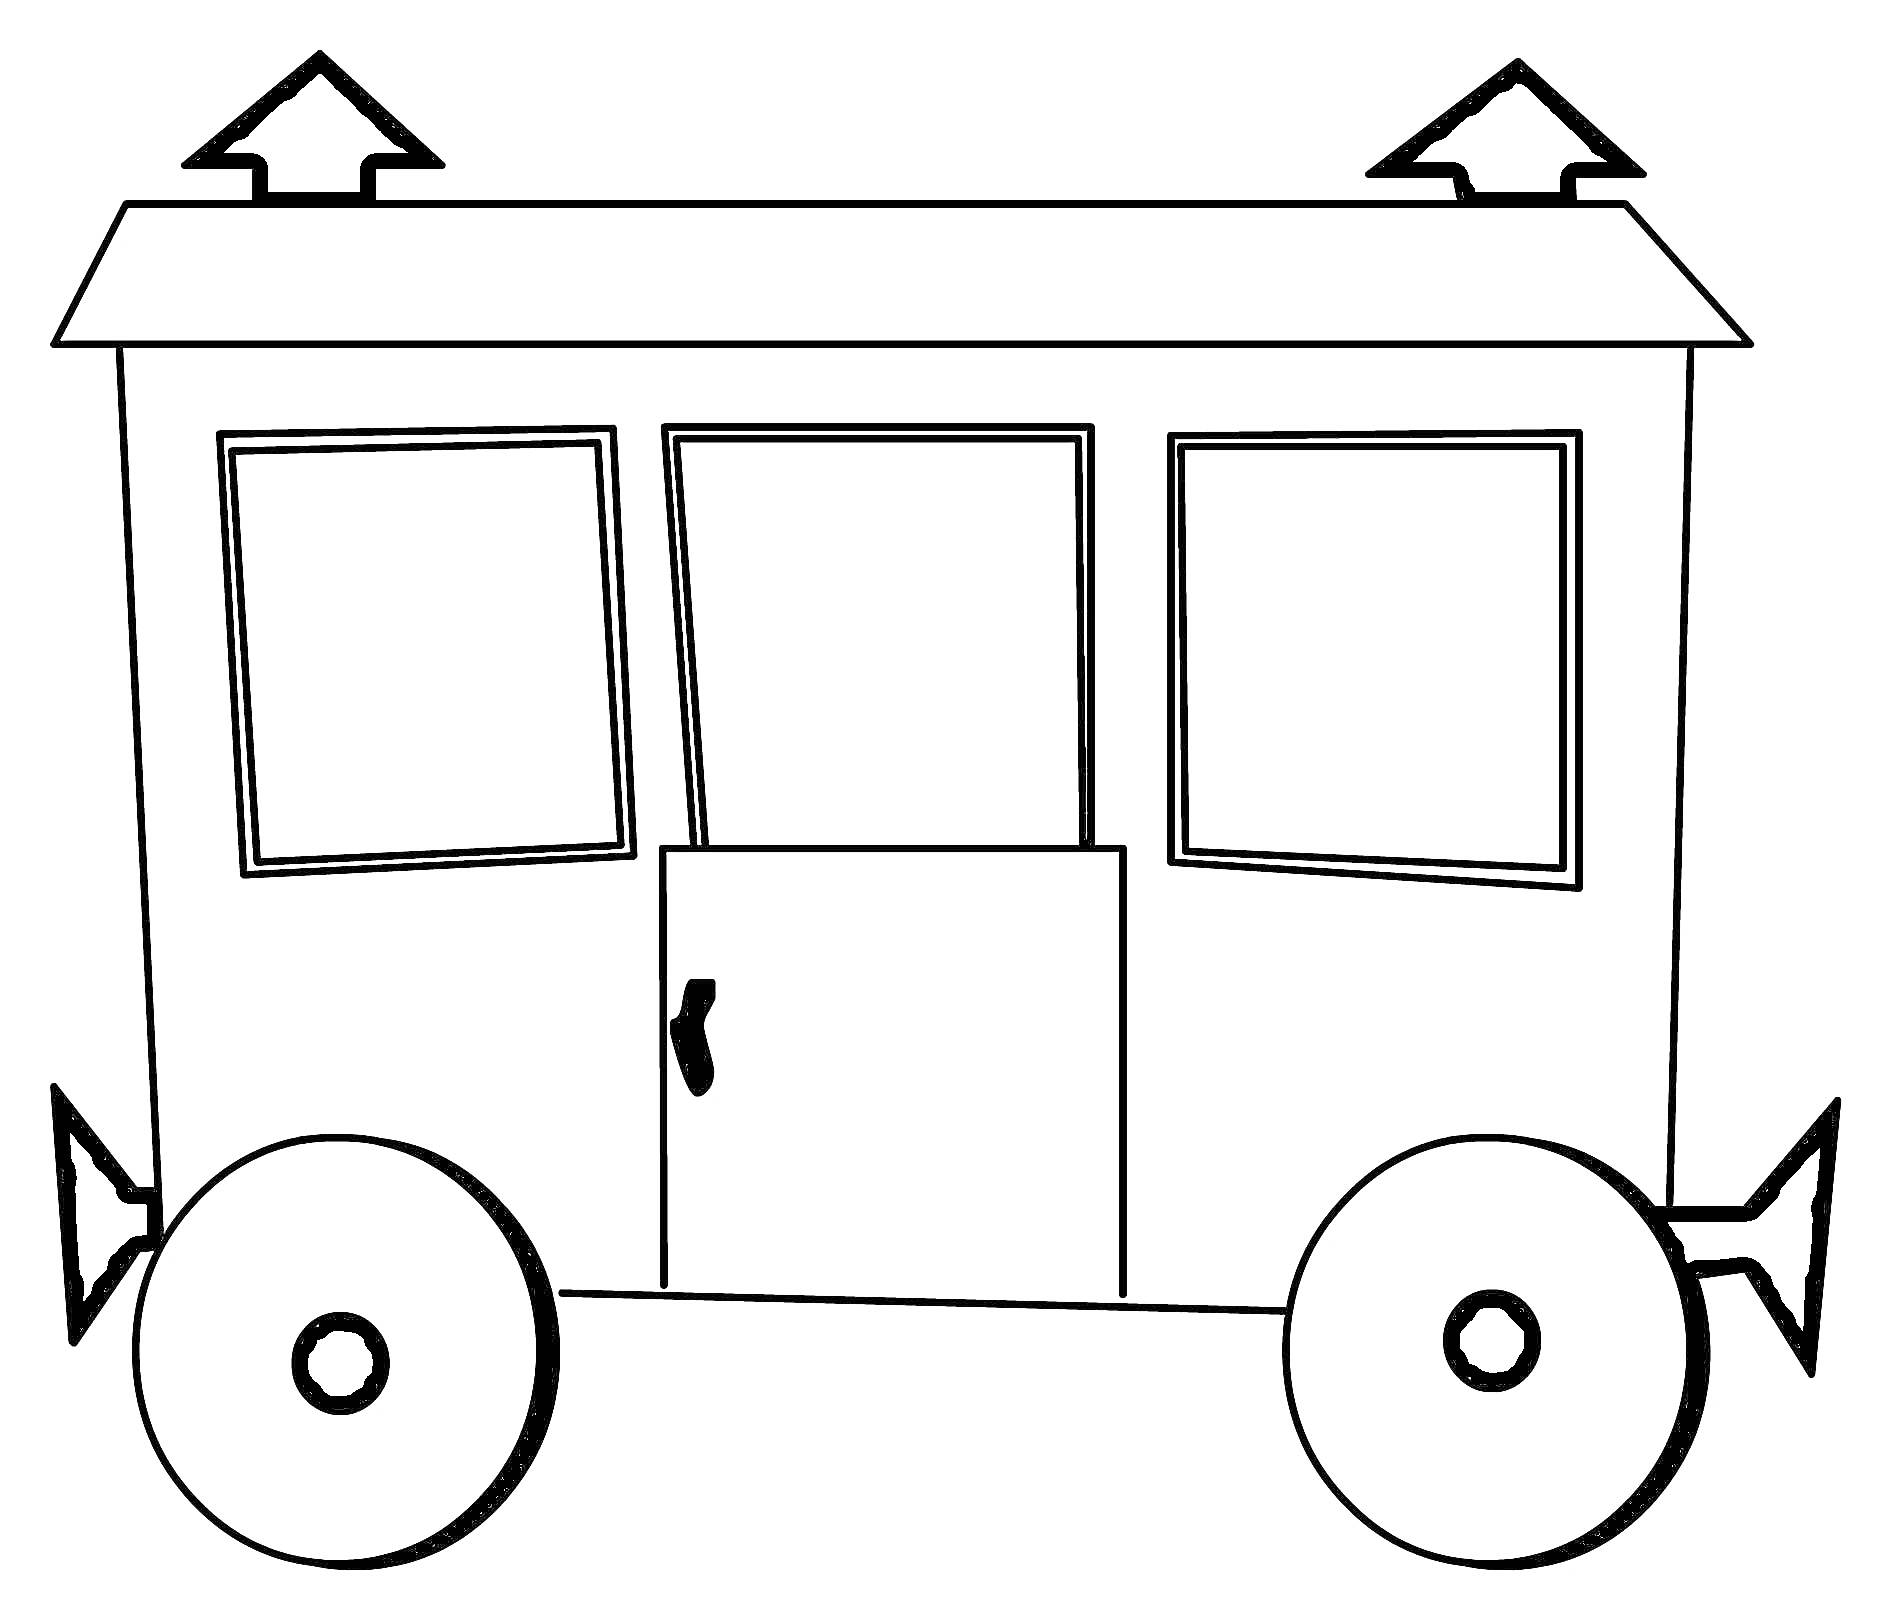 Раскраска Вагончик с двумя окнами, дверью и четырьмя стрелками на крыше и колесах